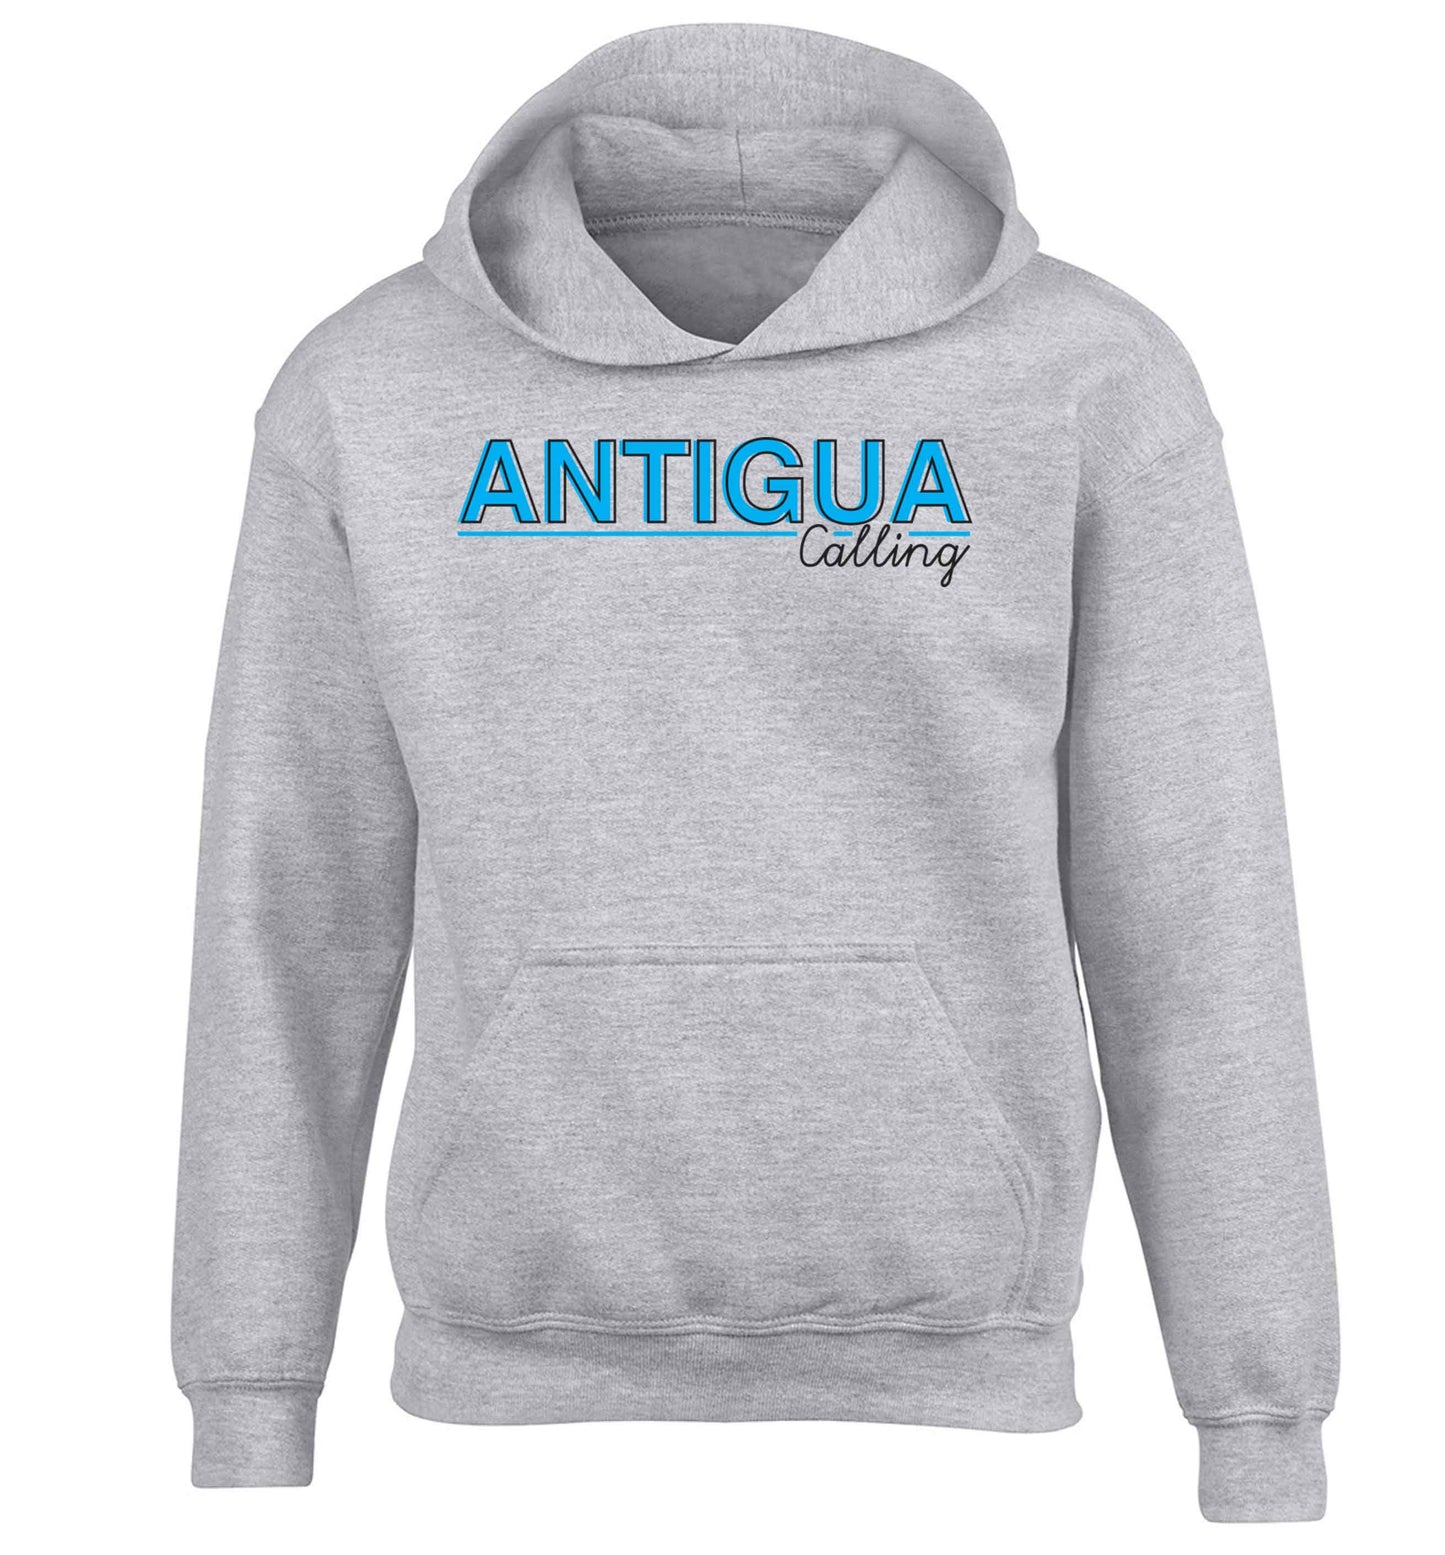 Antigua calling children's grey hoodie 12-13 Years